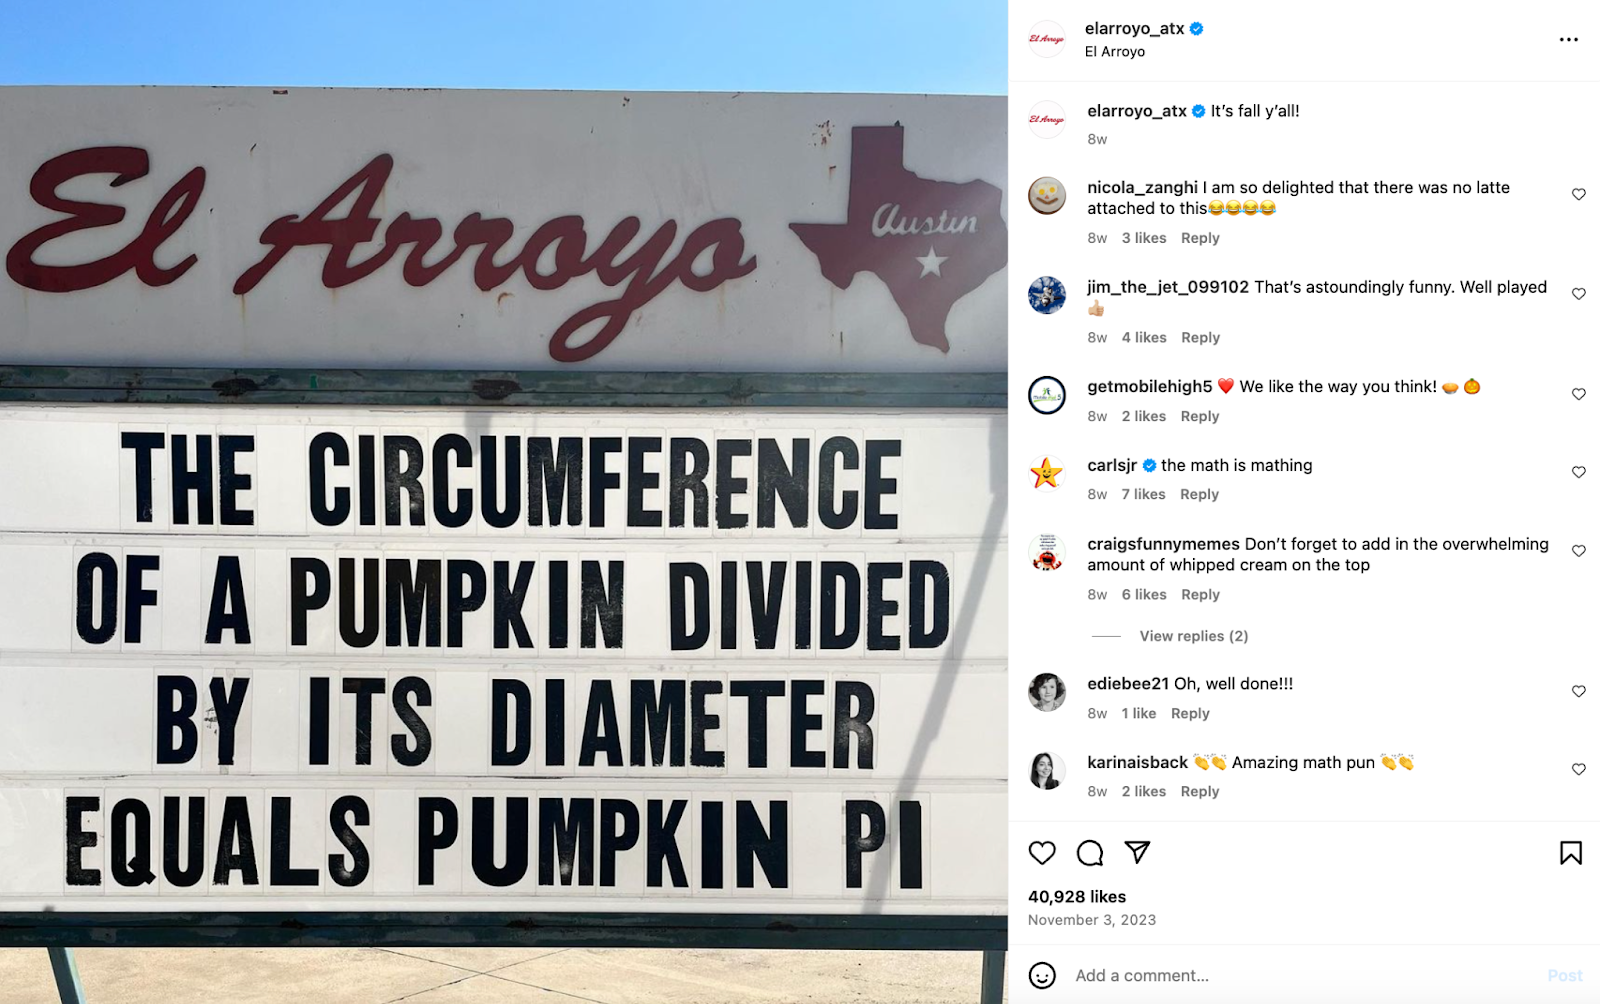 Idei creative de marketing pentru restaurante: restaurantul El Arroyo, cu sediul în Austin, este renumit pentru semnul său de marcaj care afișează cuvinte și glume obraznice.